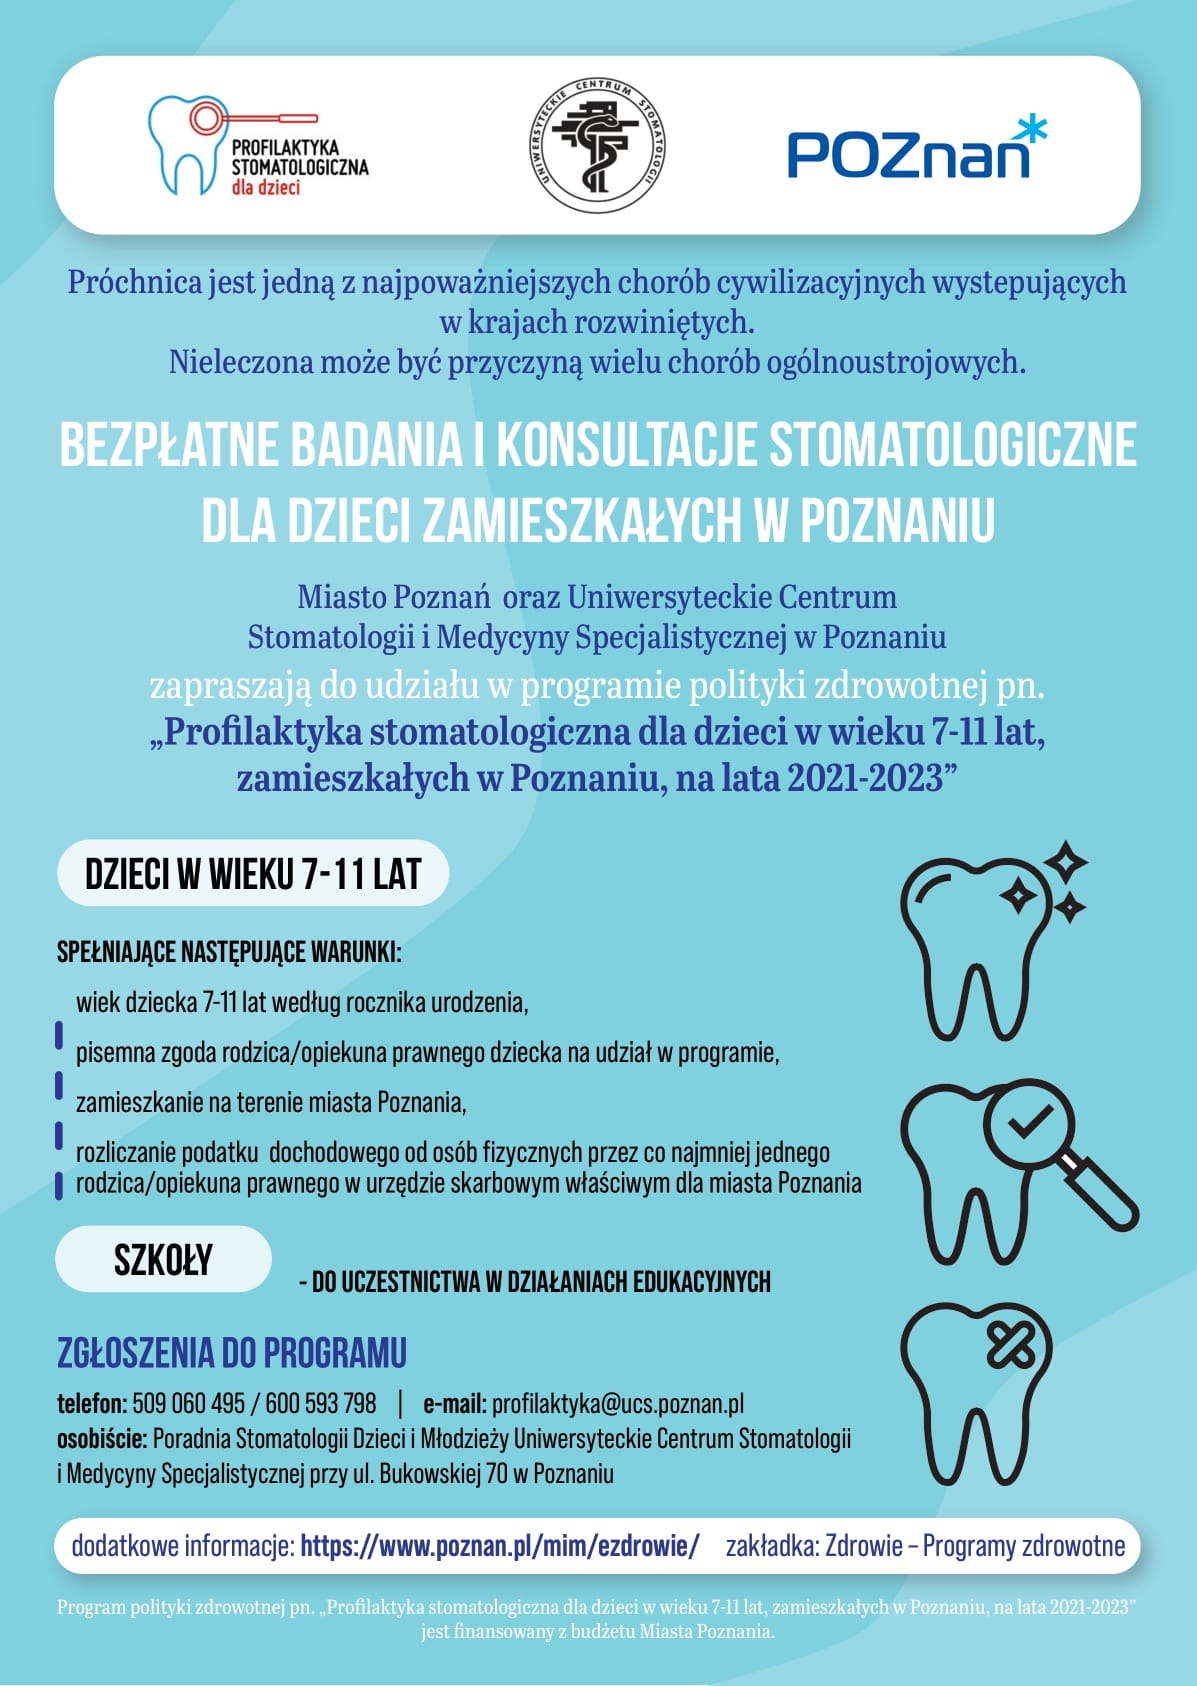 Profilaktyka stomatologiczna dla dzieci w wieku 7-11 lat - Obrazek 1